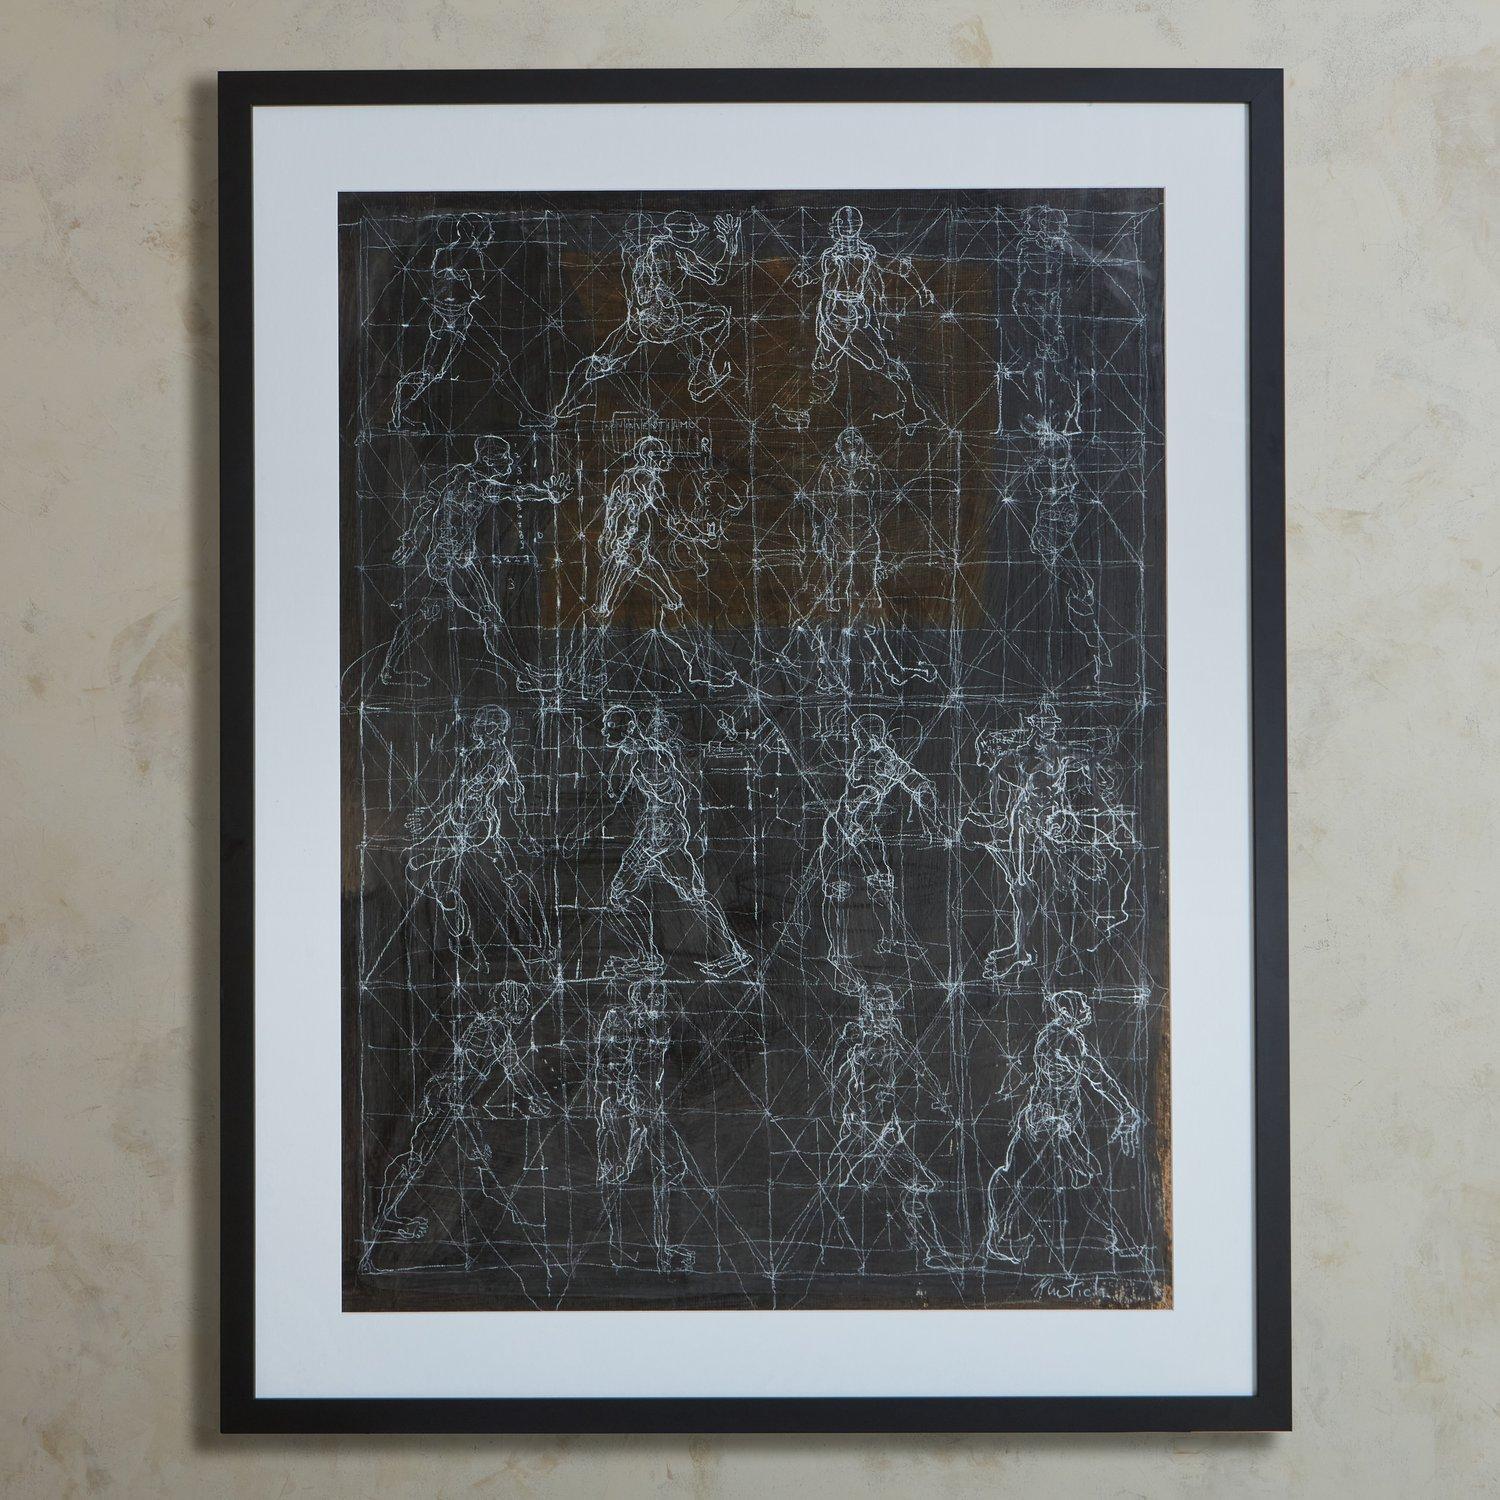 Dessin abstrait contemporain sur papier de l'artiste italien Giancarlo Mustich. Cette pièce a été professionnellement encadrée dans un cadre en bois noir avec un passe-partout blanc. Signé en bas à droite. Provenance : Italie.